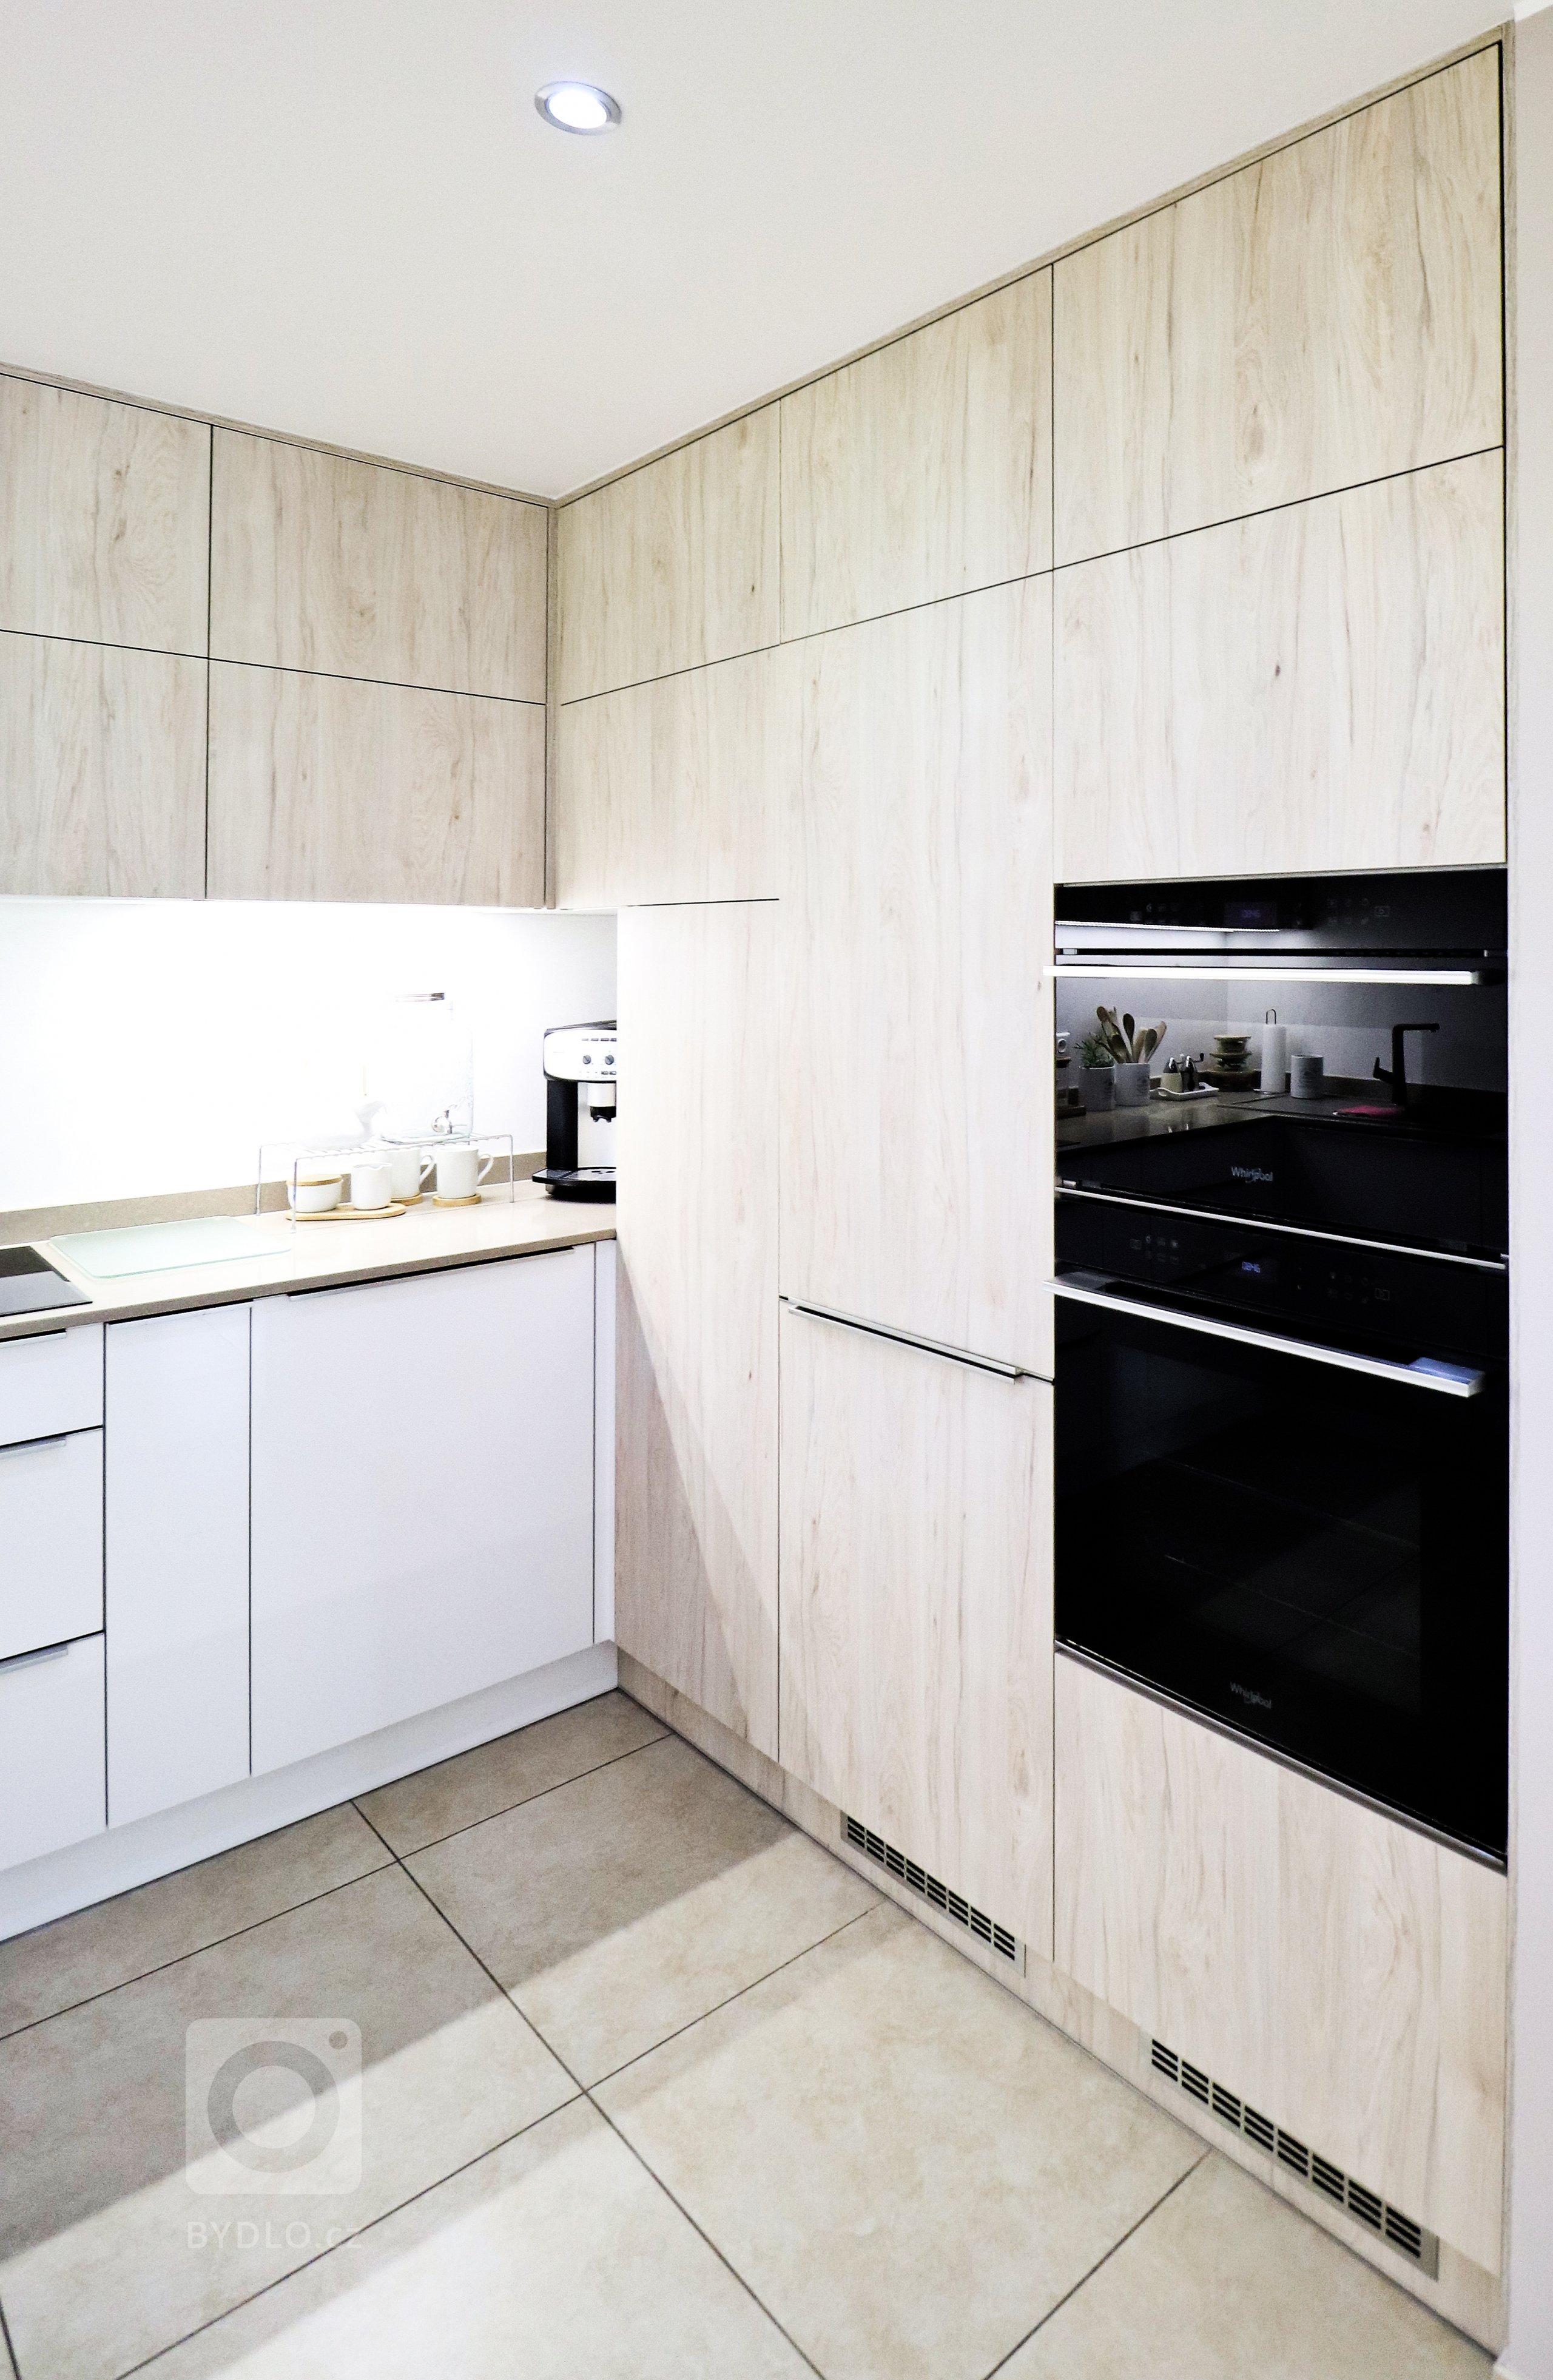 V&nbsp;rodinném domku v&nbsp;Havířově jsme se podíleli na kompletní rekonstrukci obývacího prostoru s&nbsp;kuchyňskou linkou.

Bílá akrylátová dvířka doplňuje…